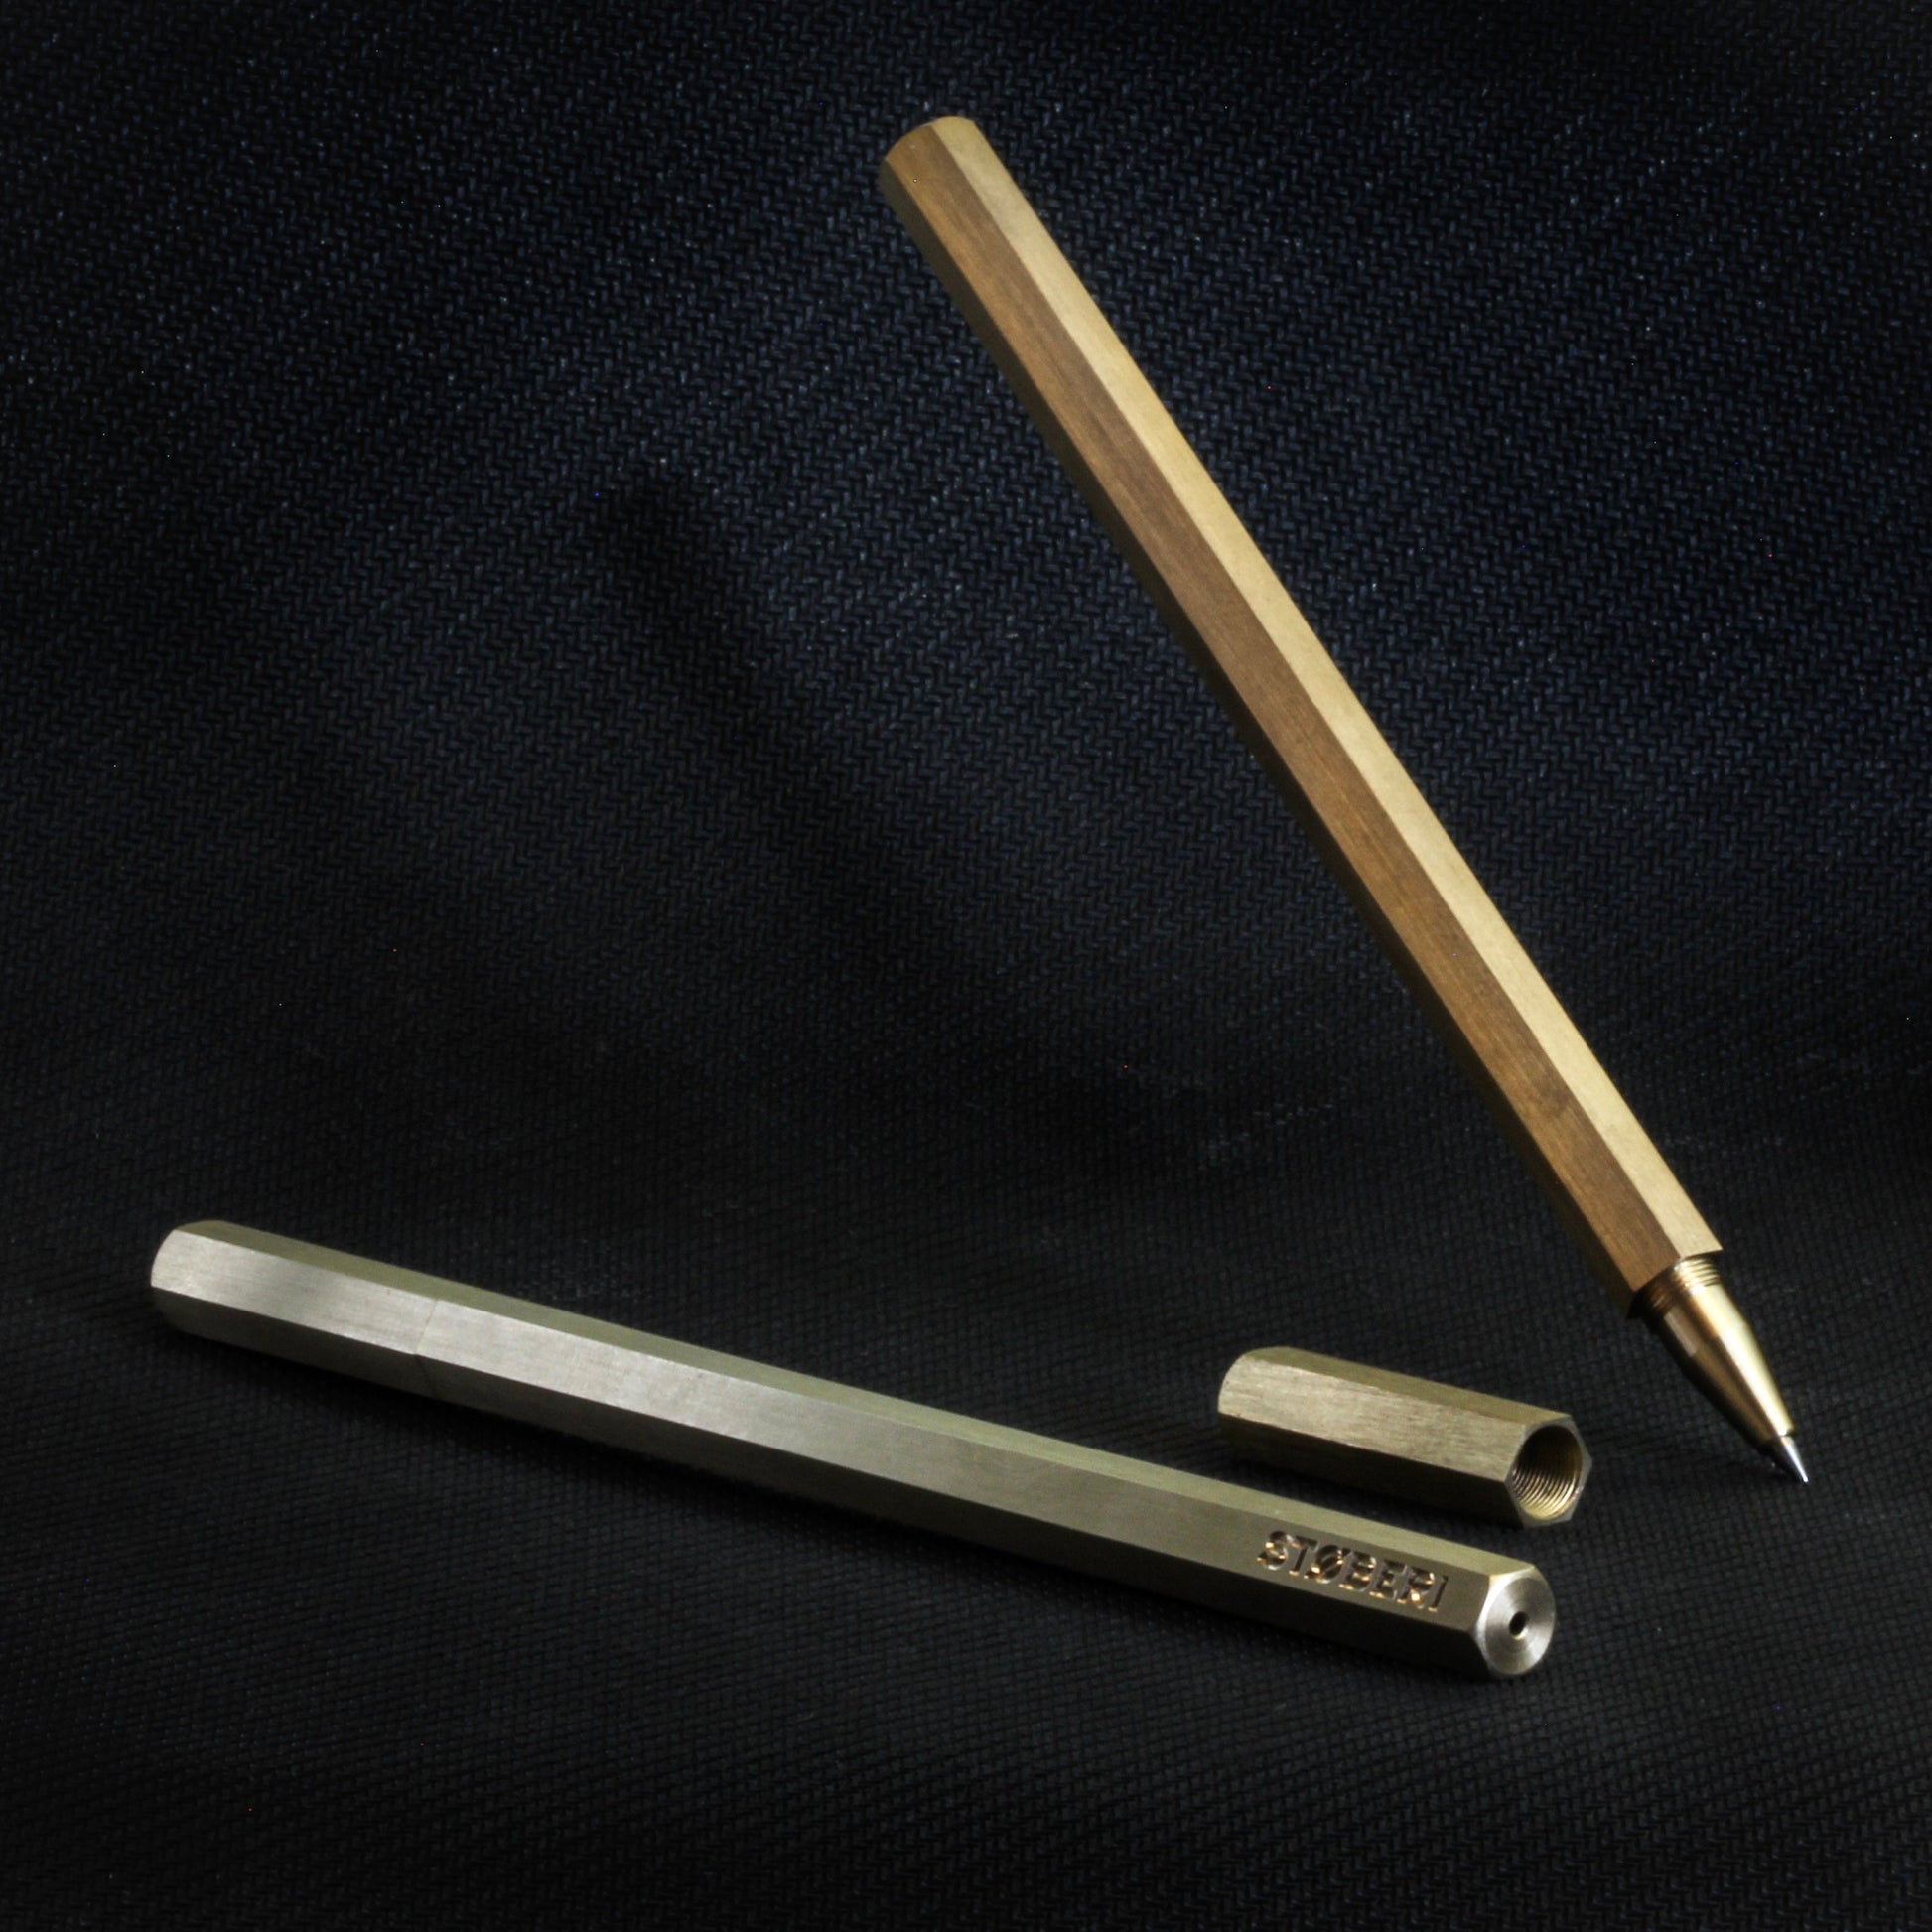 Western Beaded Pens — BRAN-did